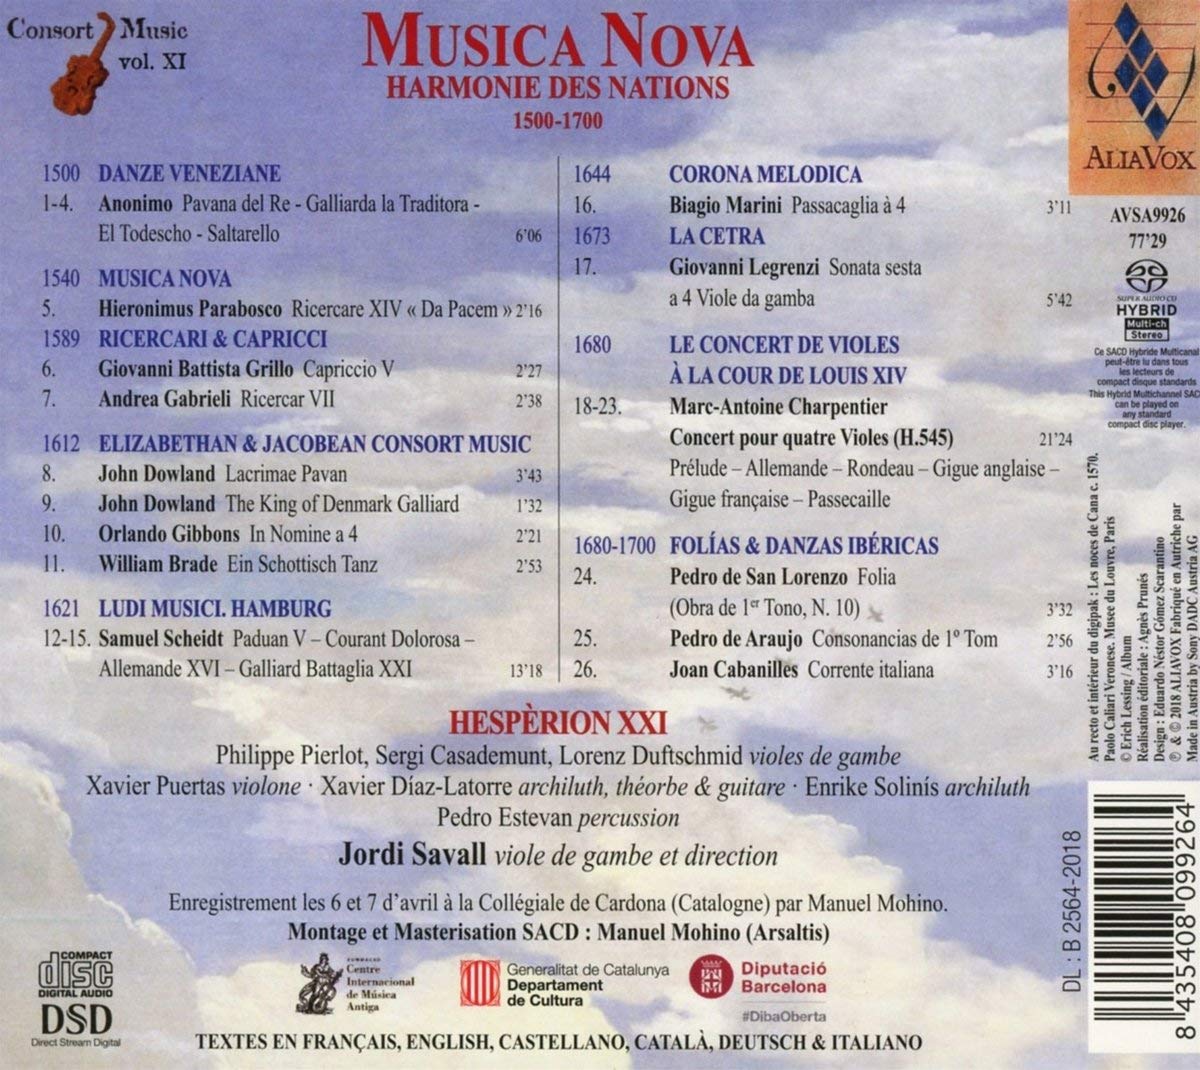 Musica Nova, Harmonie des nations 1500-1700 - slide-1